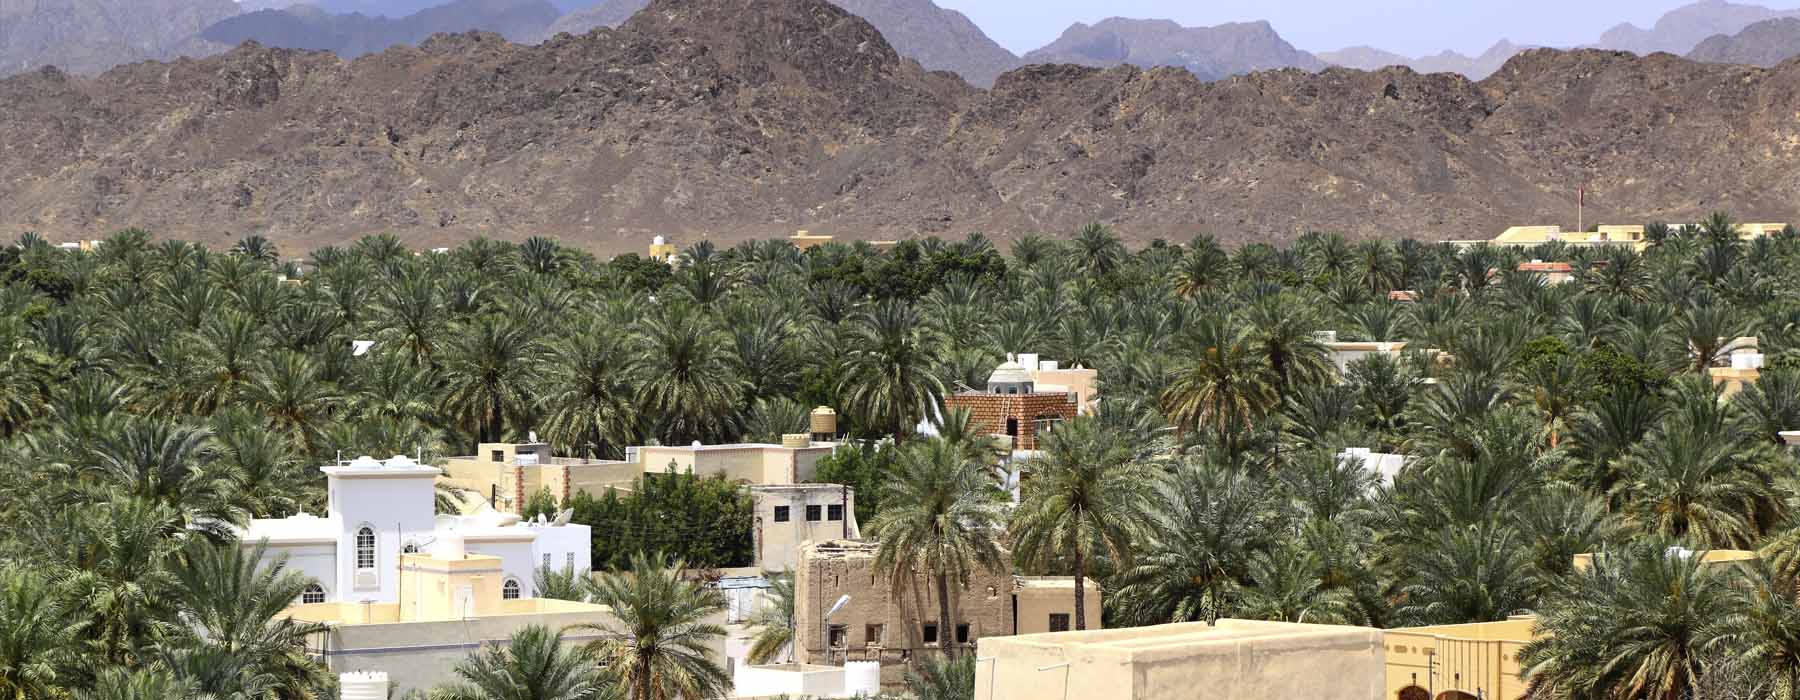 All our Oman<br class="hidden-md hidden-lg" /> Honeymoons